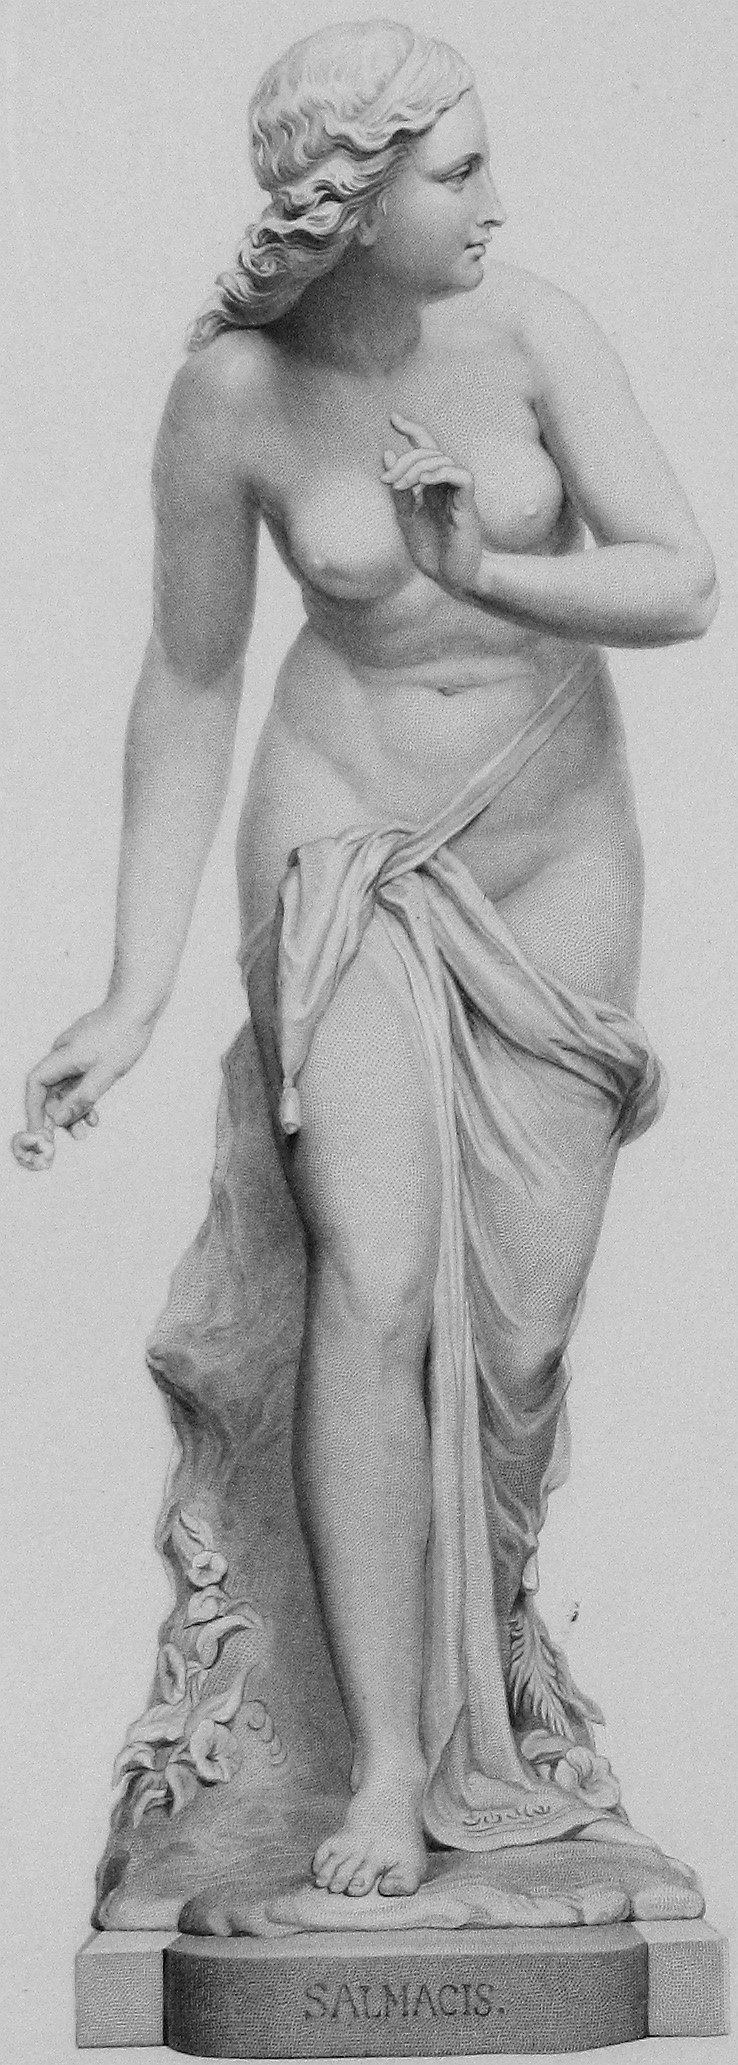 Salmacis FileA statue of Salmacis Sir Thomas Brock 1870JPG Wikimedia